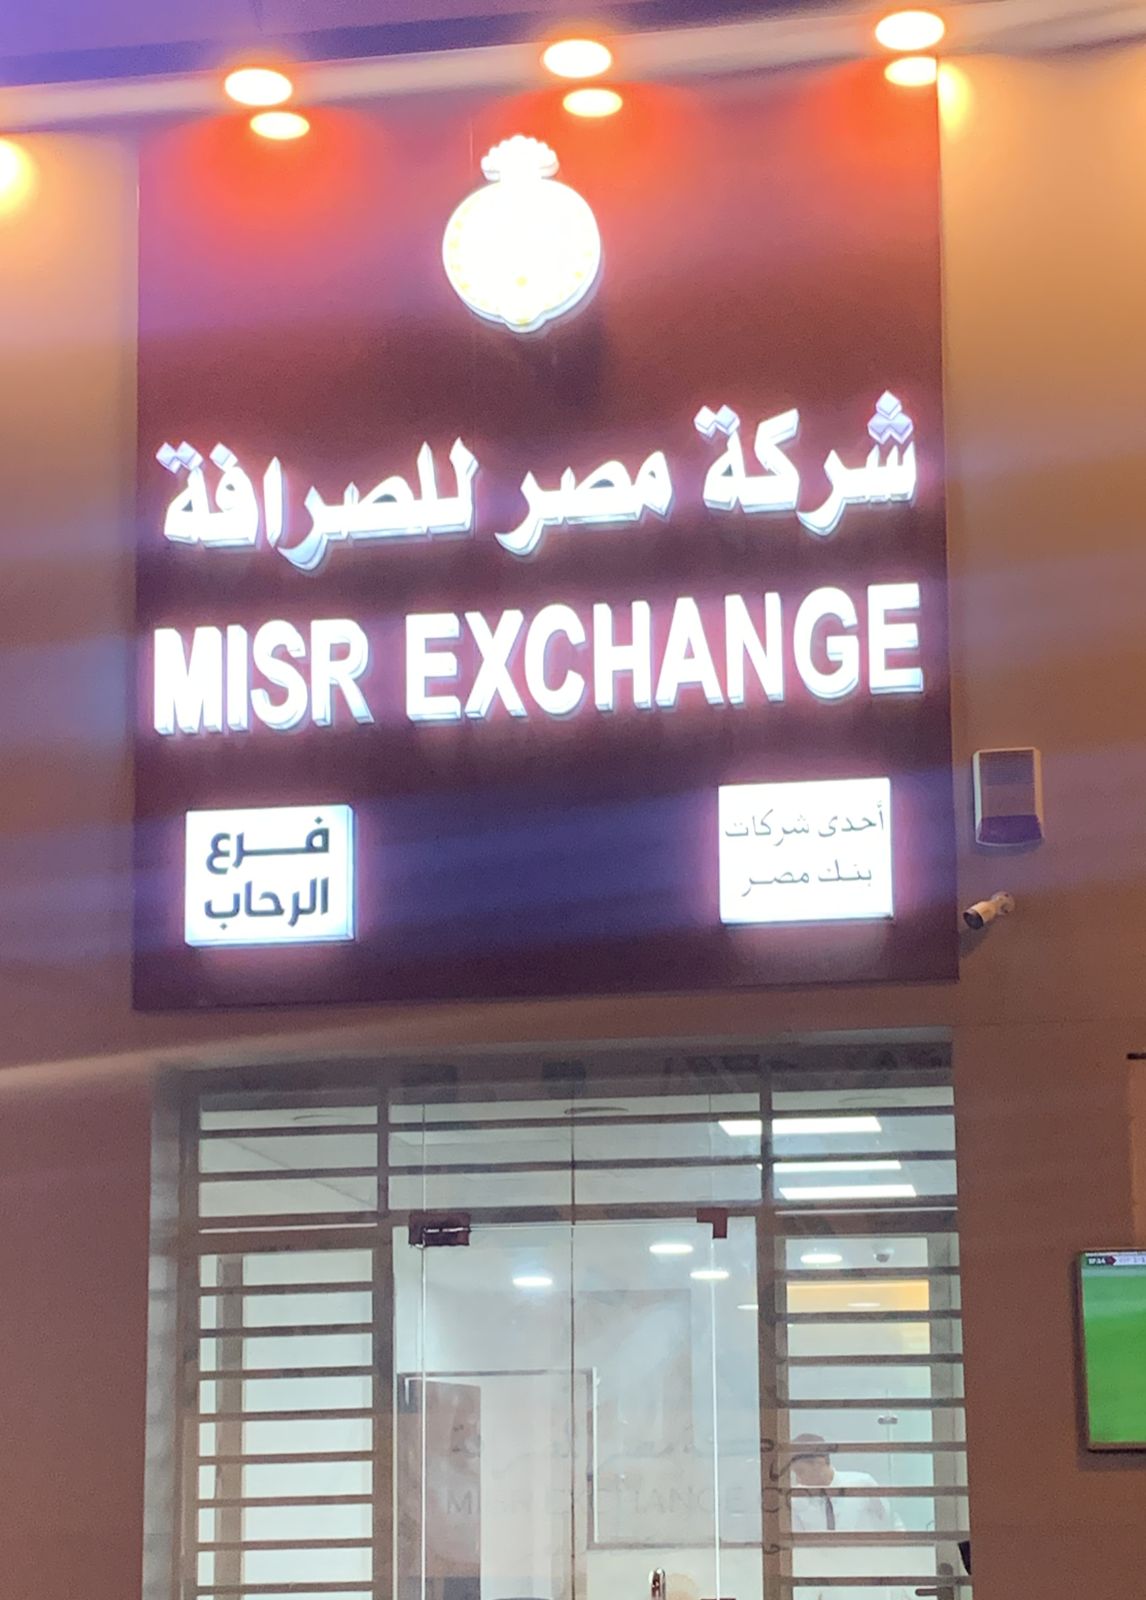 misr exchange